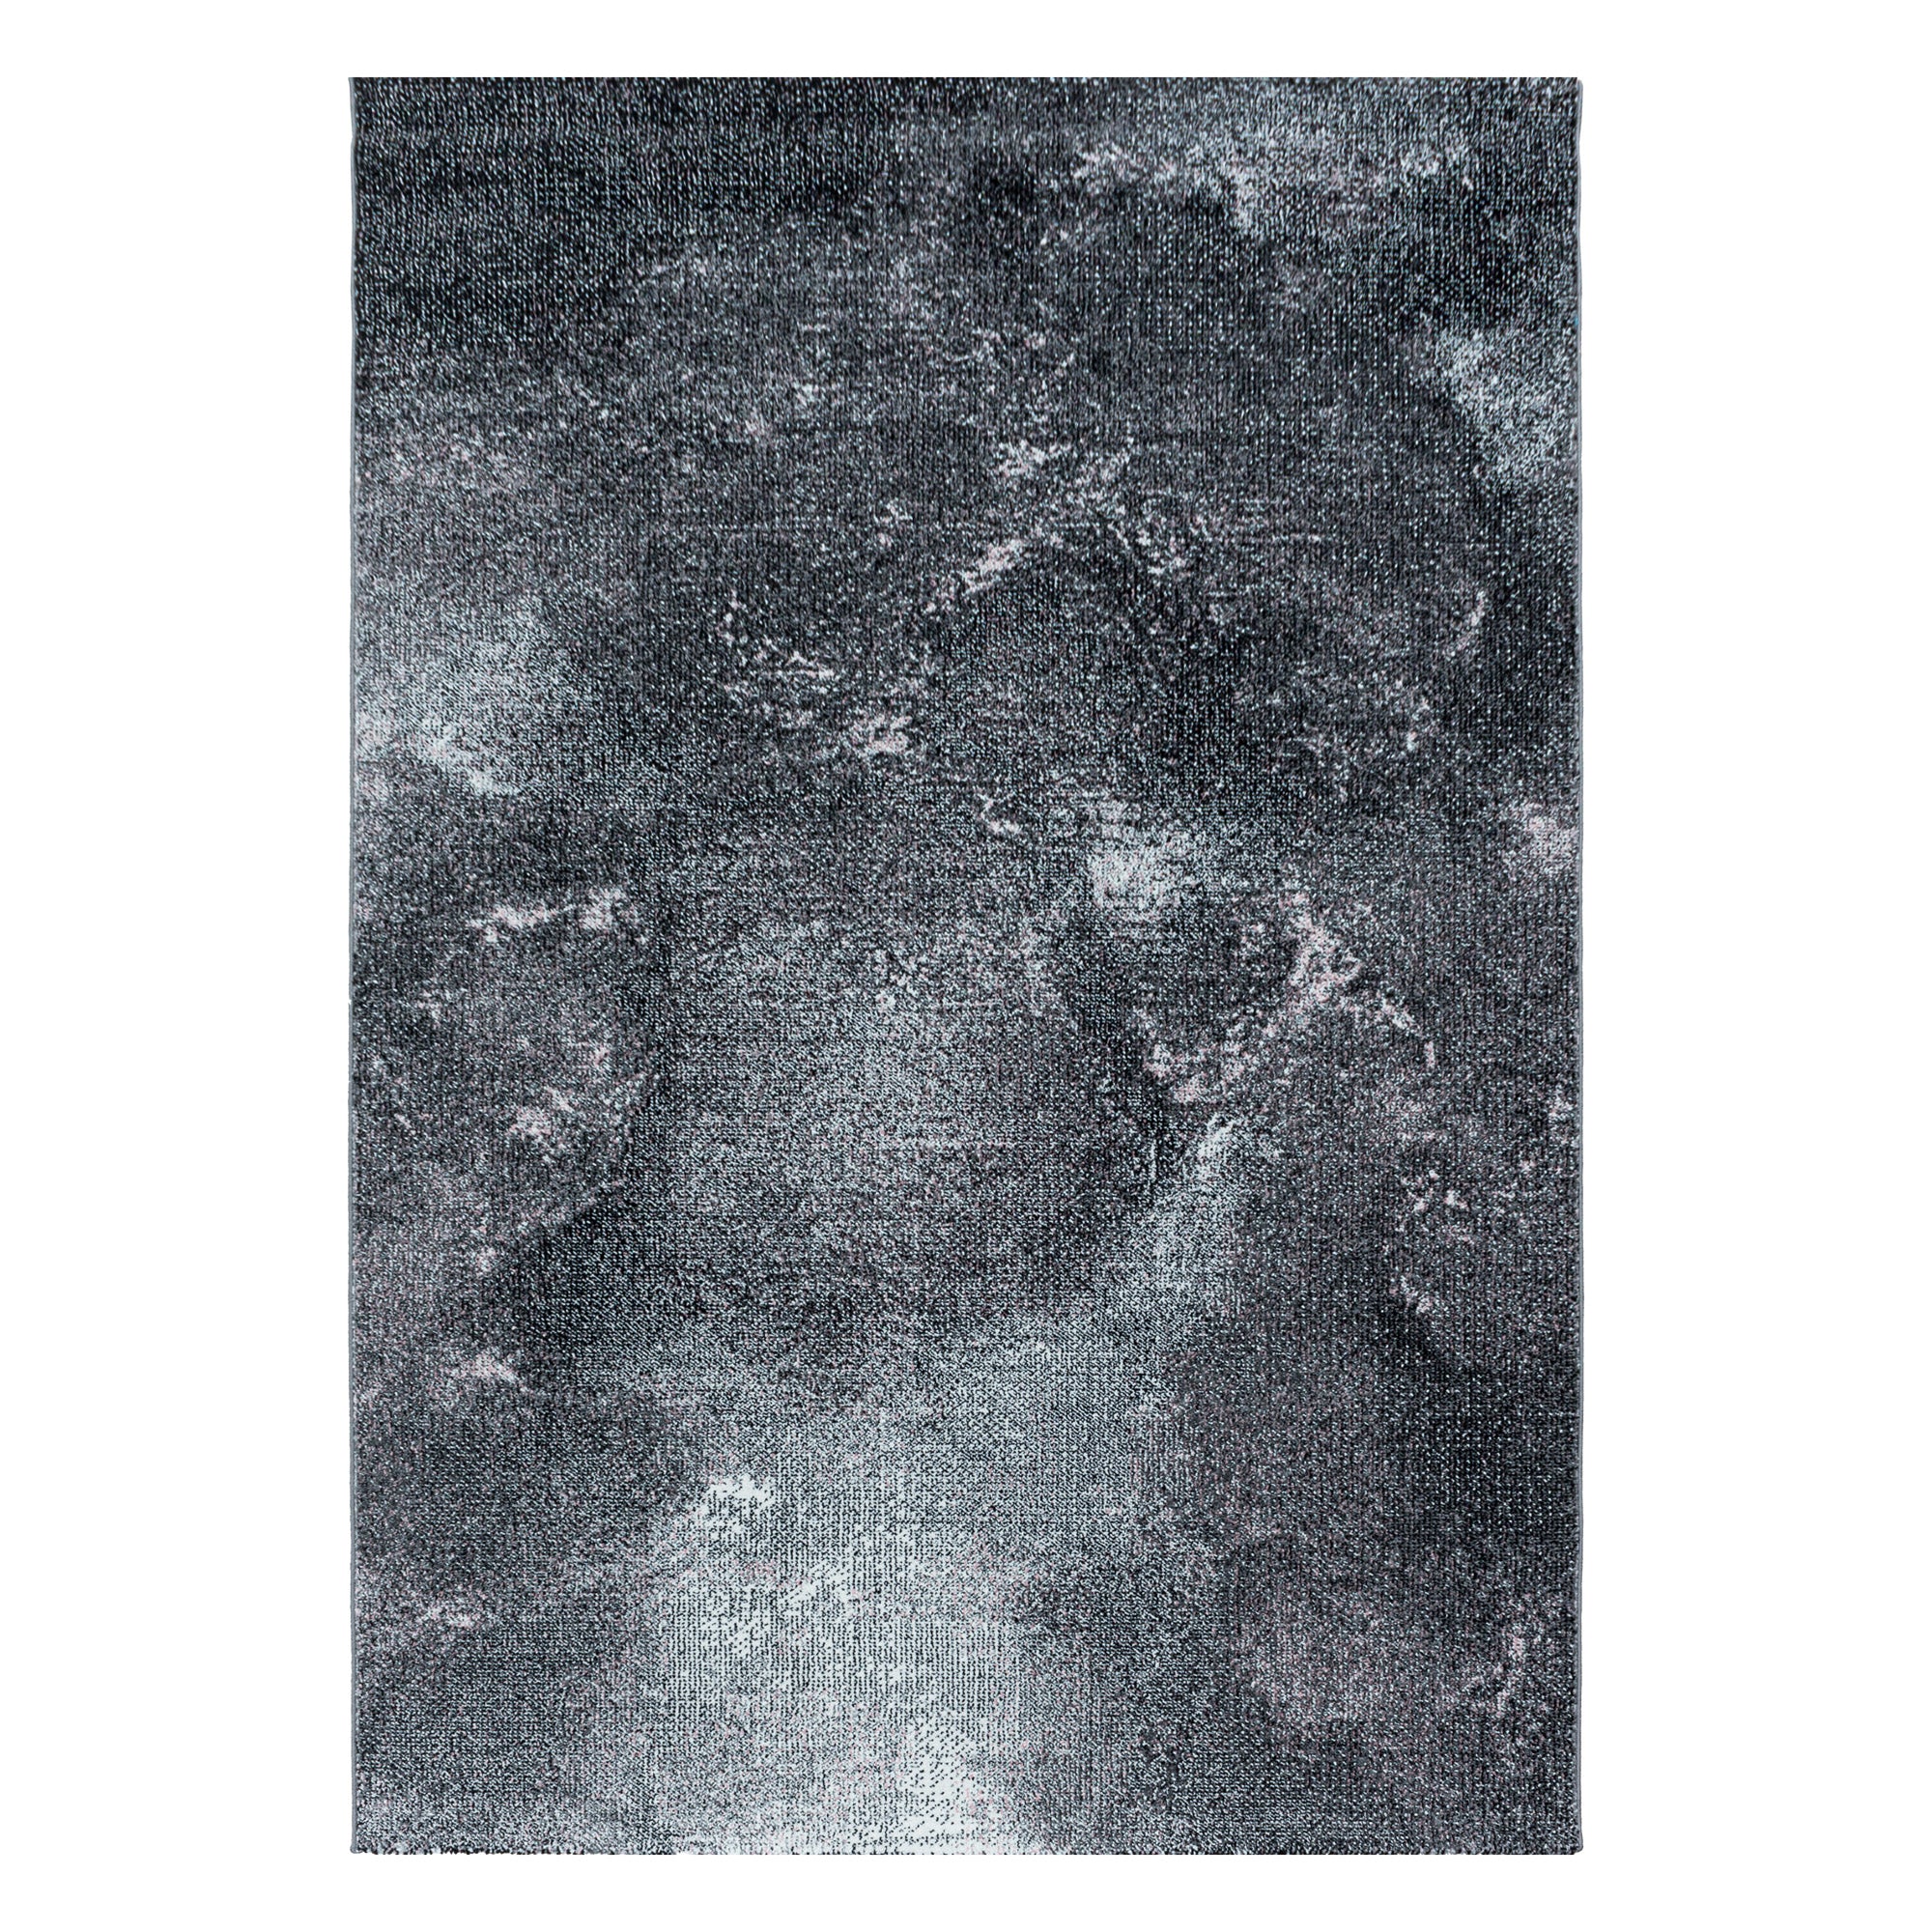 Kurzflor Teppich Rosa Grau Wolken Muster Marmoriert Wohnzimmerteppich Weich